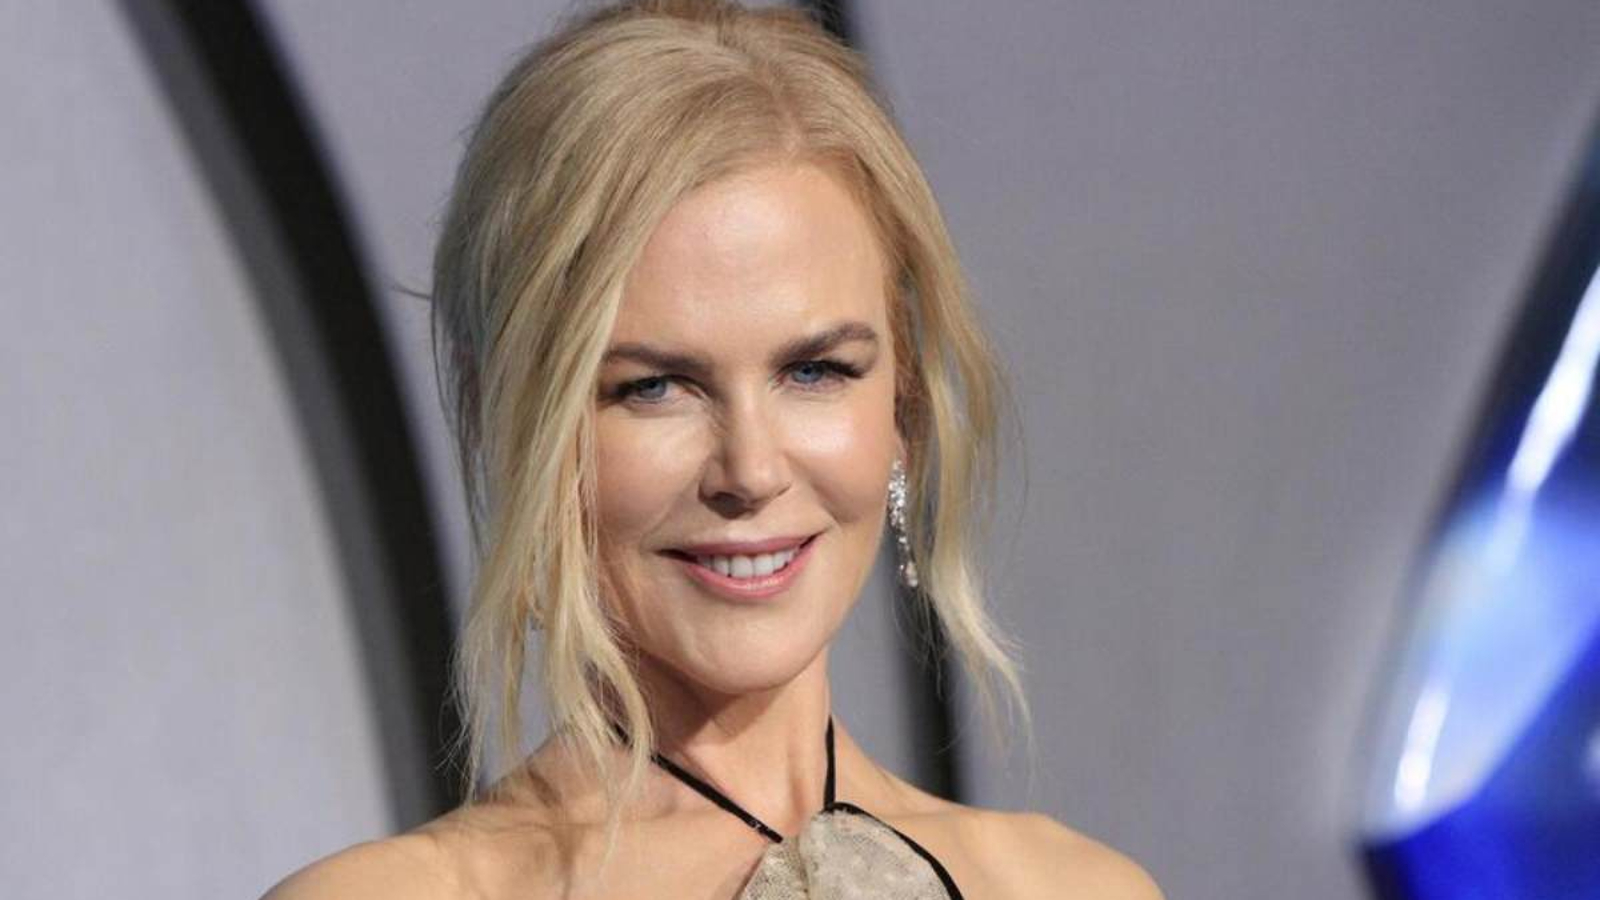 Nicole Kidman: 'Mentivo sulla mia altezza per ottenere le audizioni'